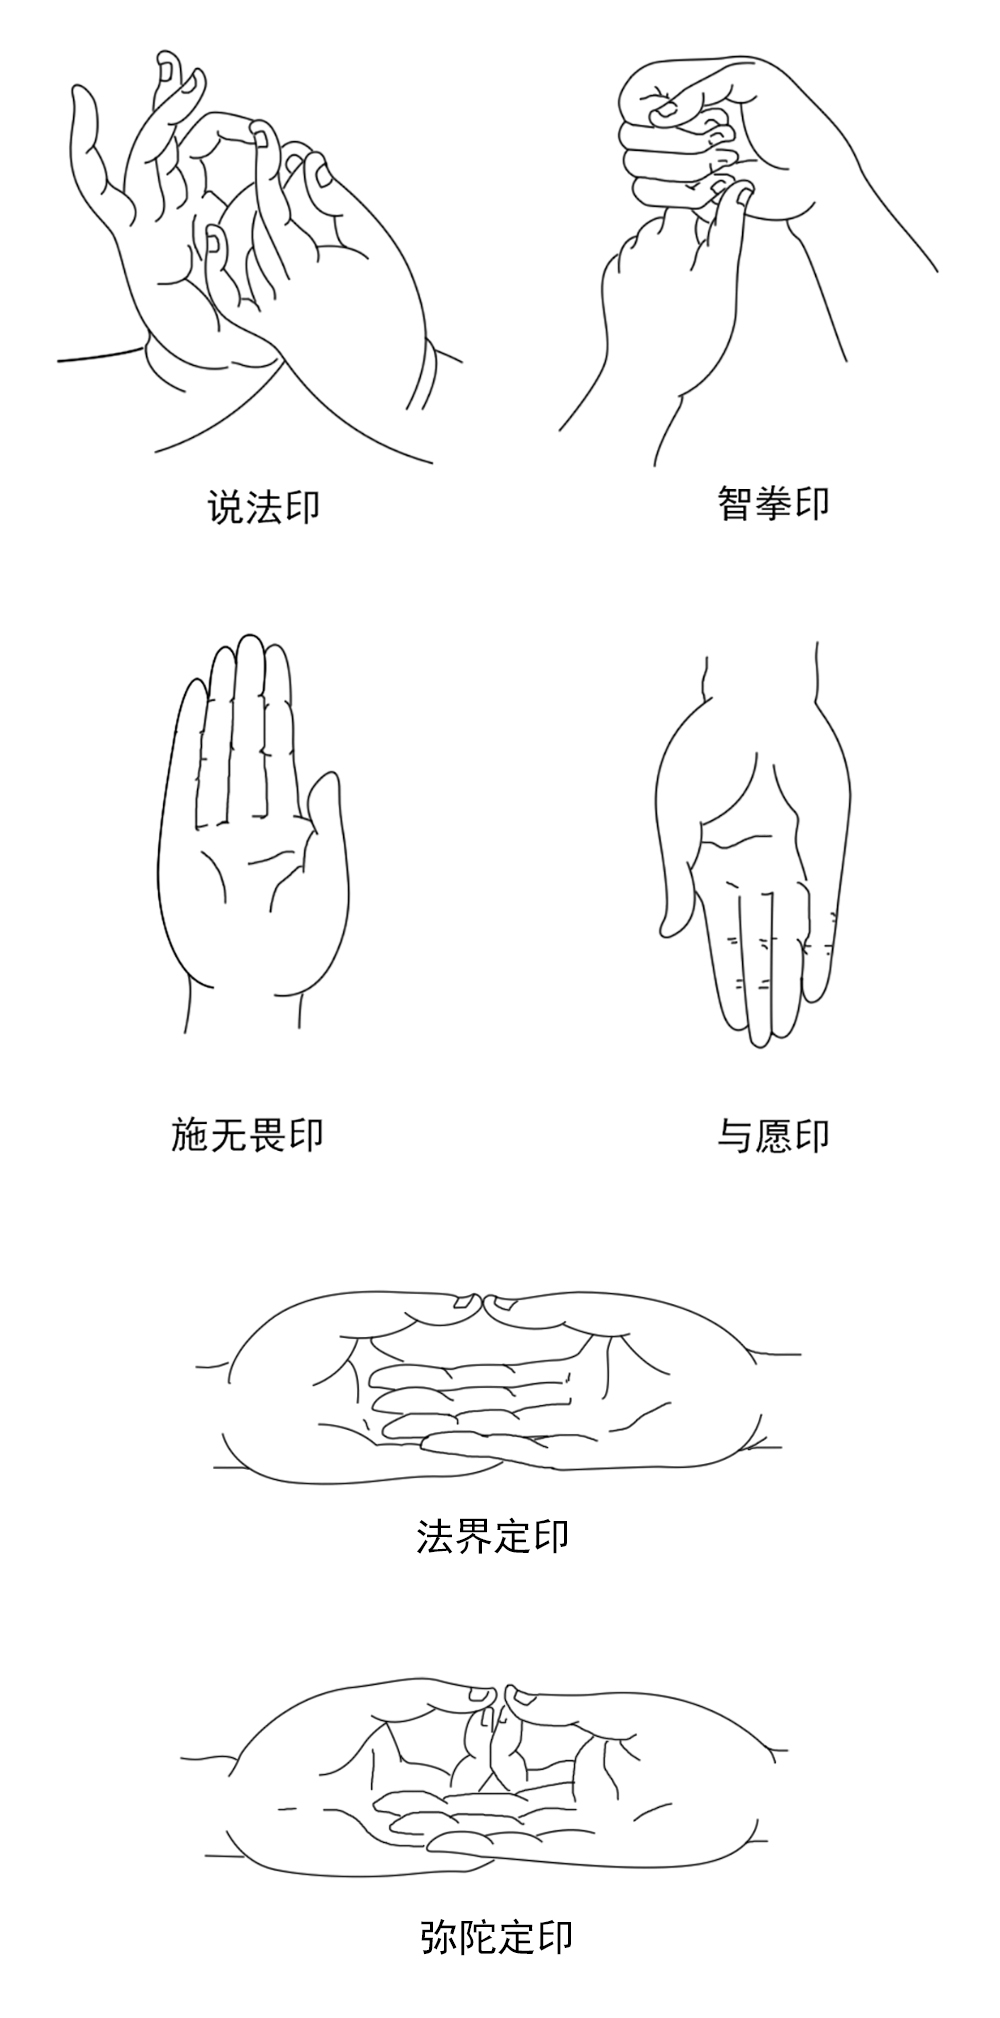 以上五种手印,合称为释迦五印,这是最常见的几种印相